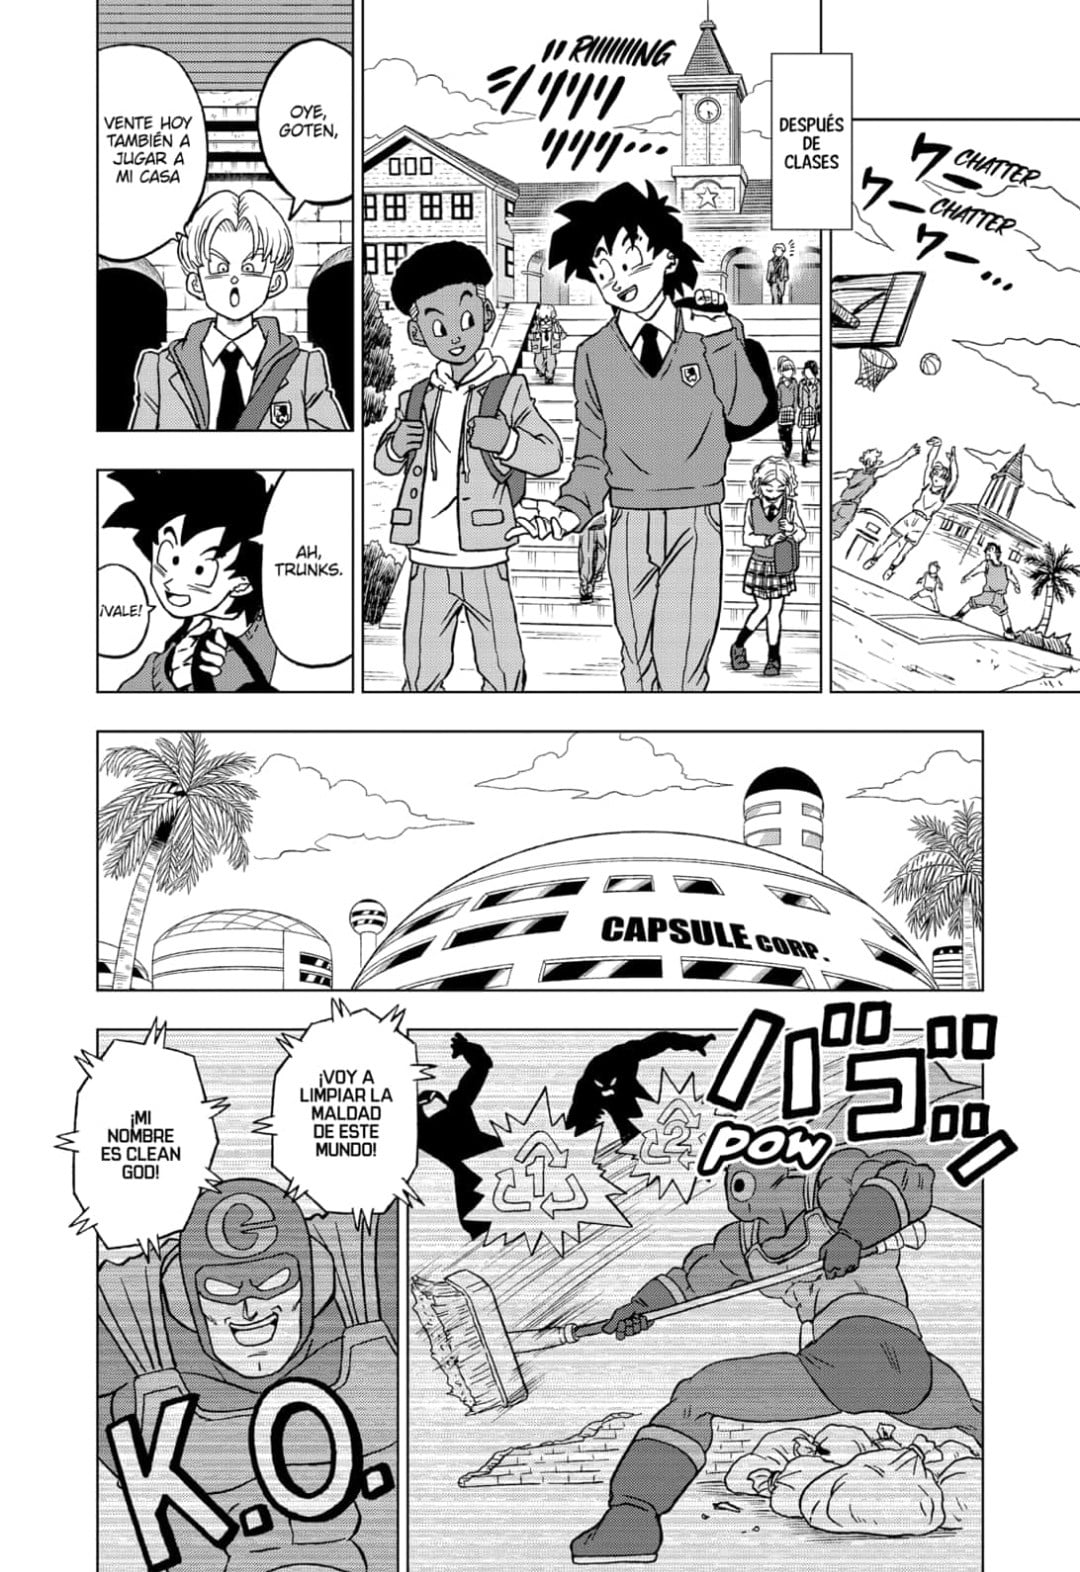 Dragon Ball Super Capítulo 88 retrasado: nueva fecha de lanzamiento,  spoilers, escaneos sin procesar, filtraciones, cuenta regresiva, dónde leer  en línea - All Things Anime